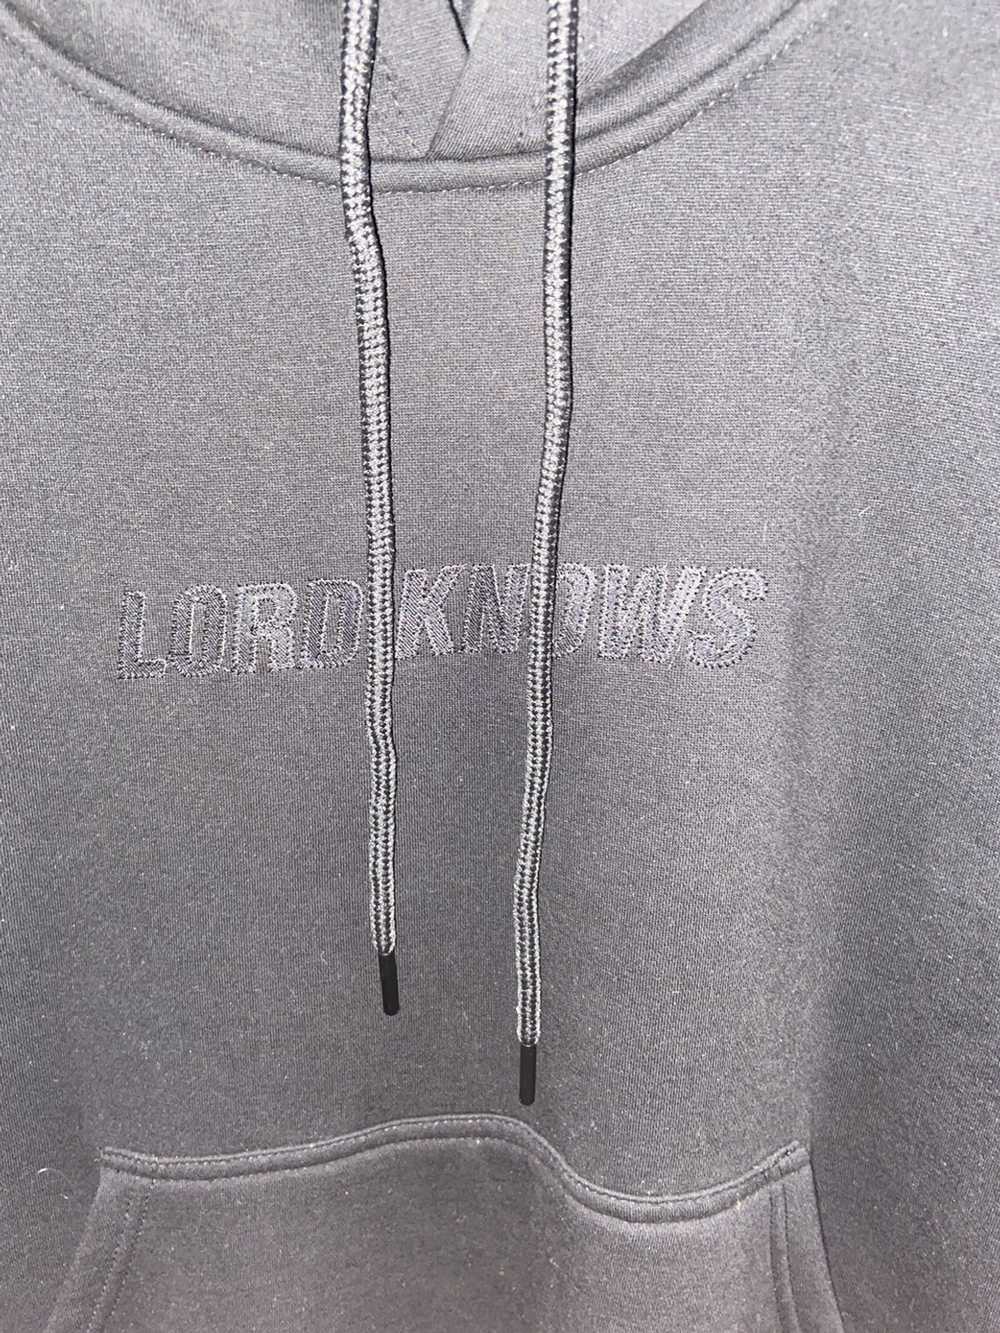 Lxrdknows Lord Knows Black on Black logo hoodie - image 2